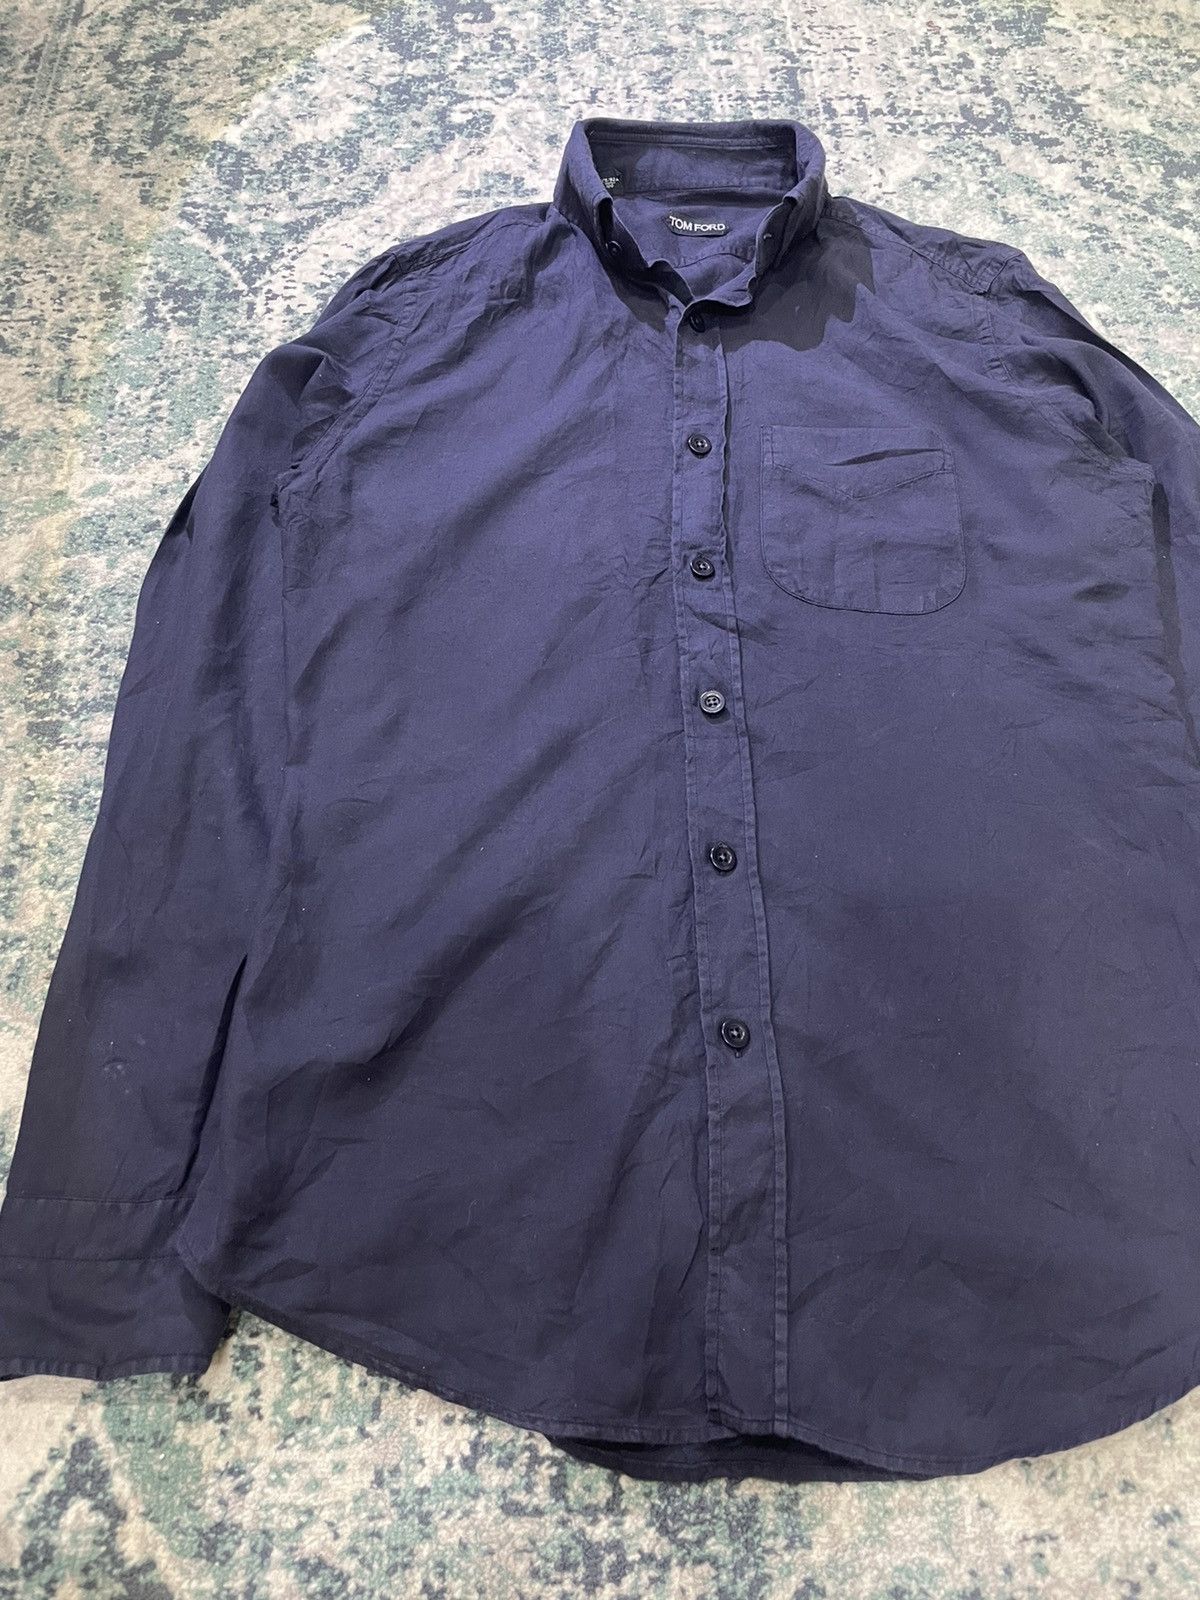 Tom Ford Cashmere & Cotton Shirt - 4